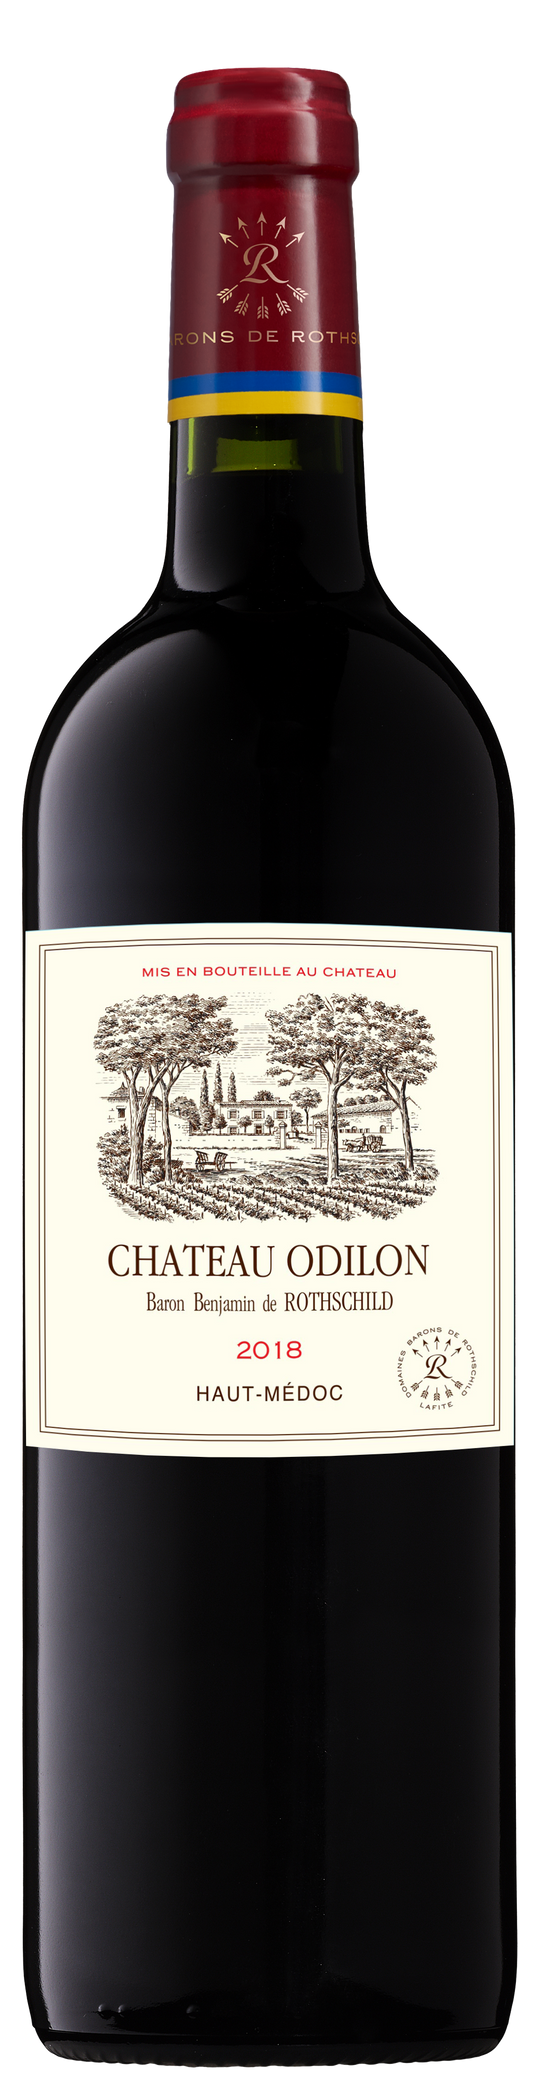 Château Odilon 2018